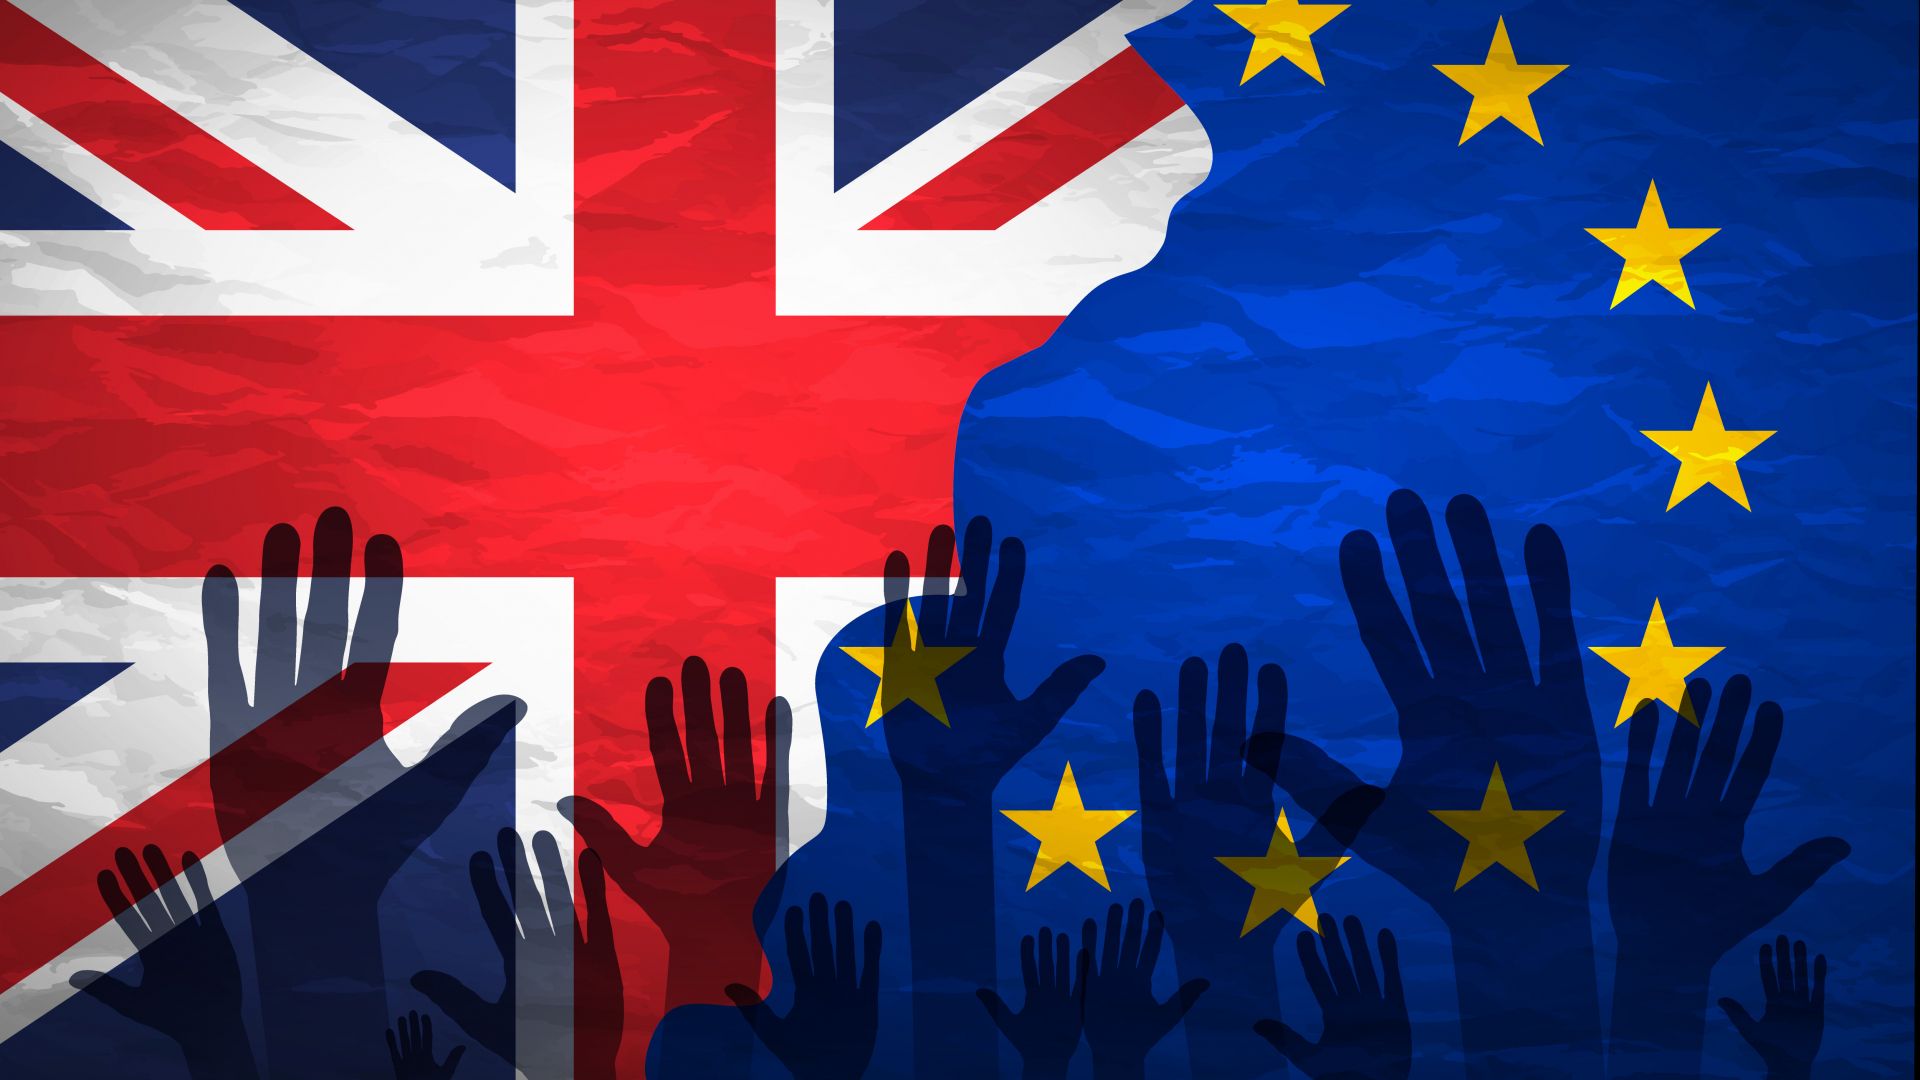  EU-UK future partnership: Brexit